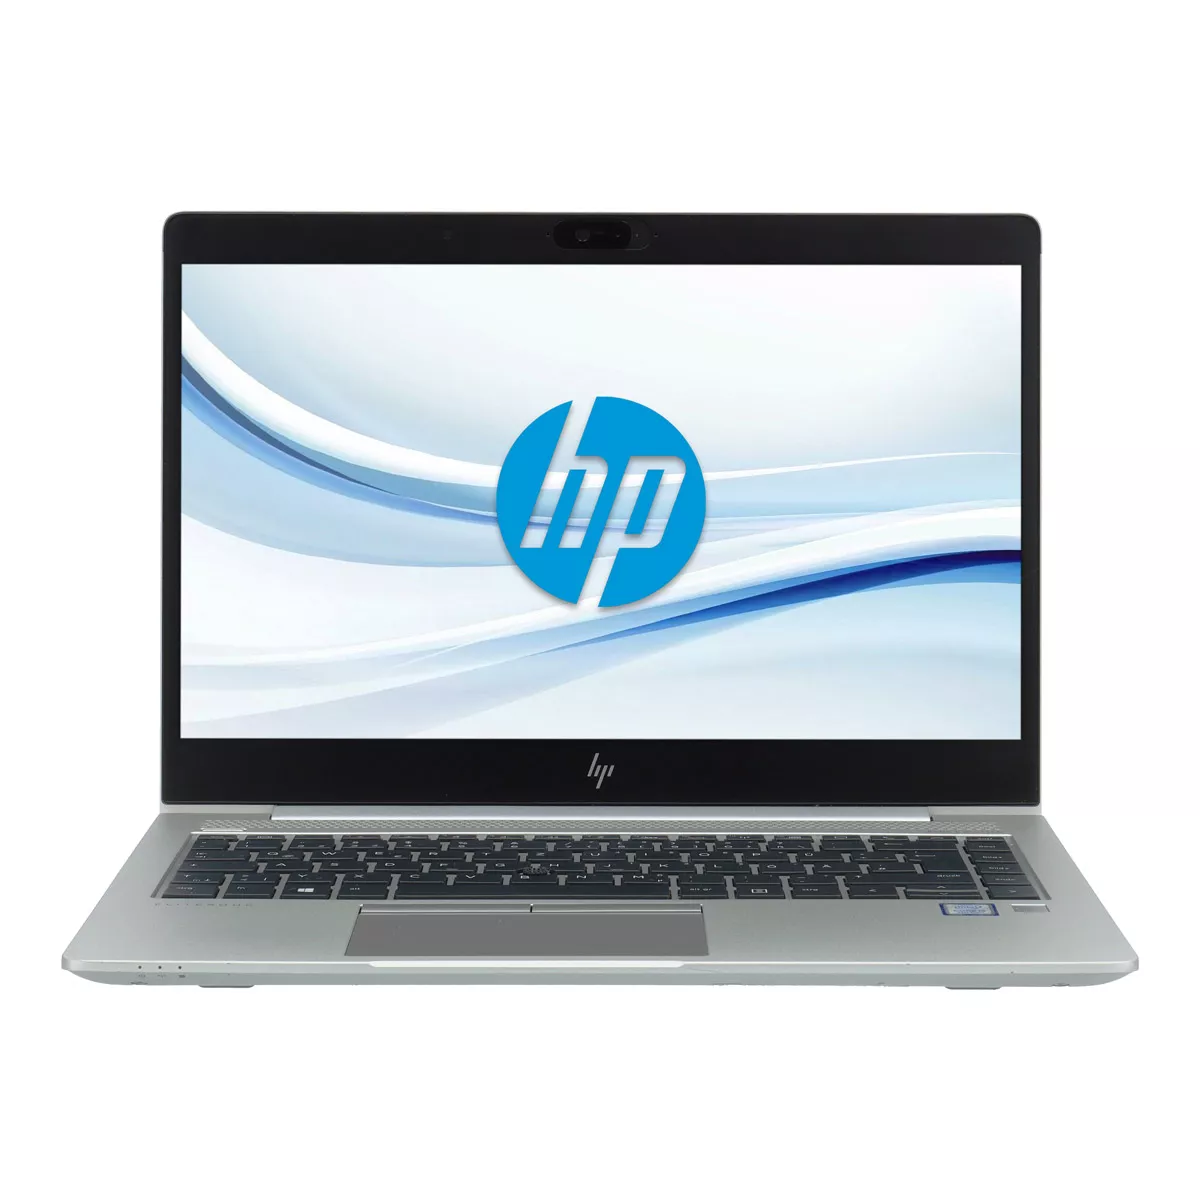 HP EliteBook 840 G5 Core i5 8350U Full-HD 240 GB M.2 SSD Webcam A+